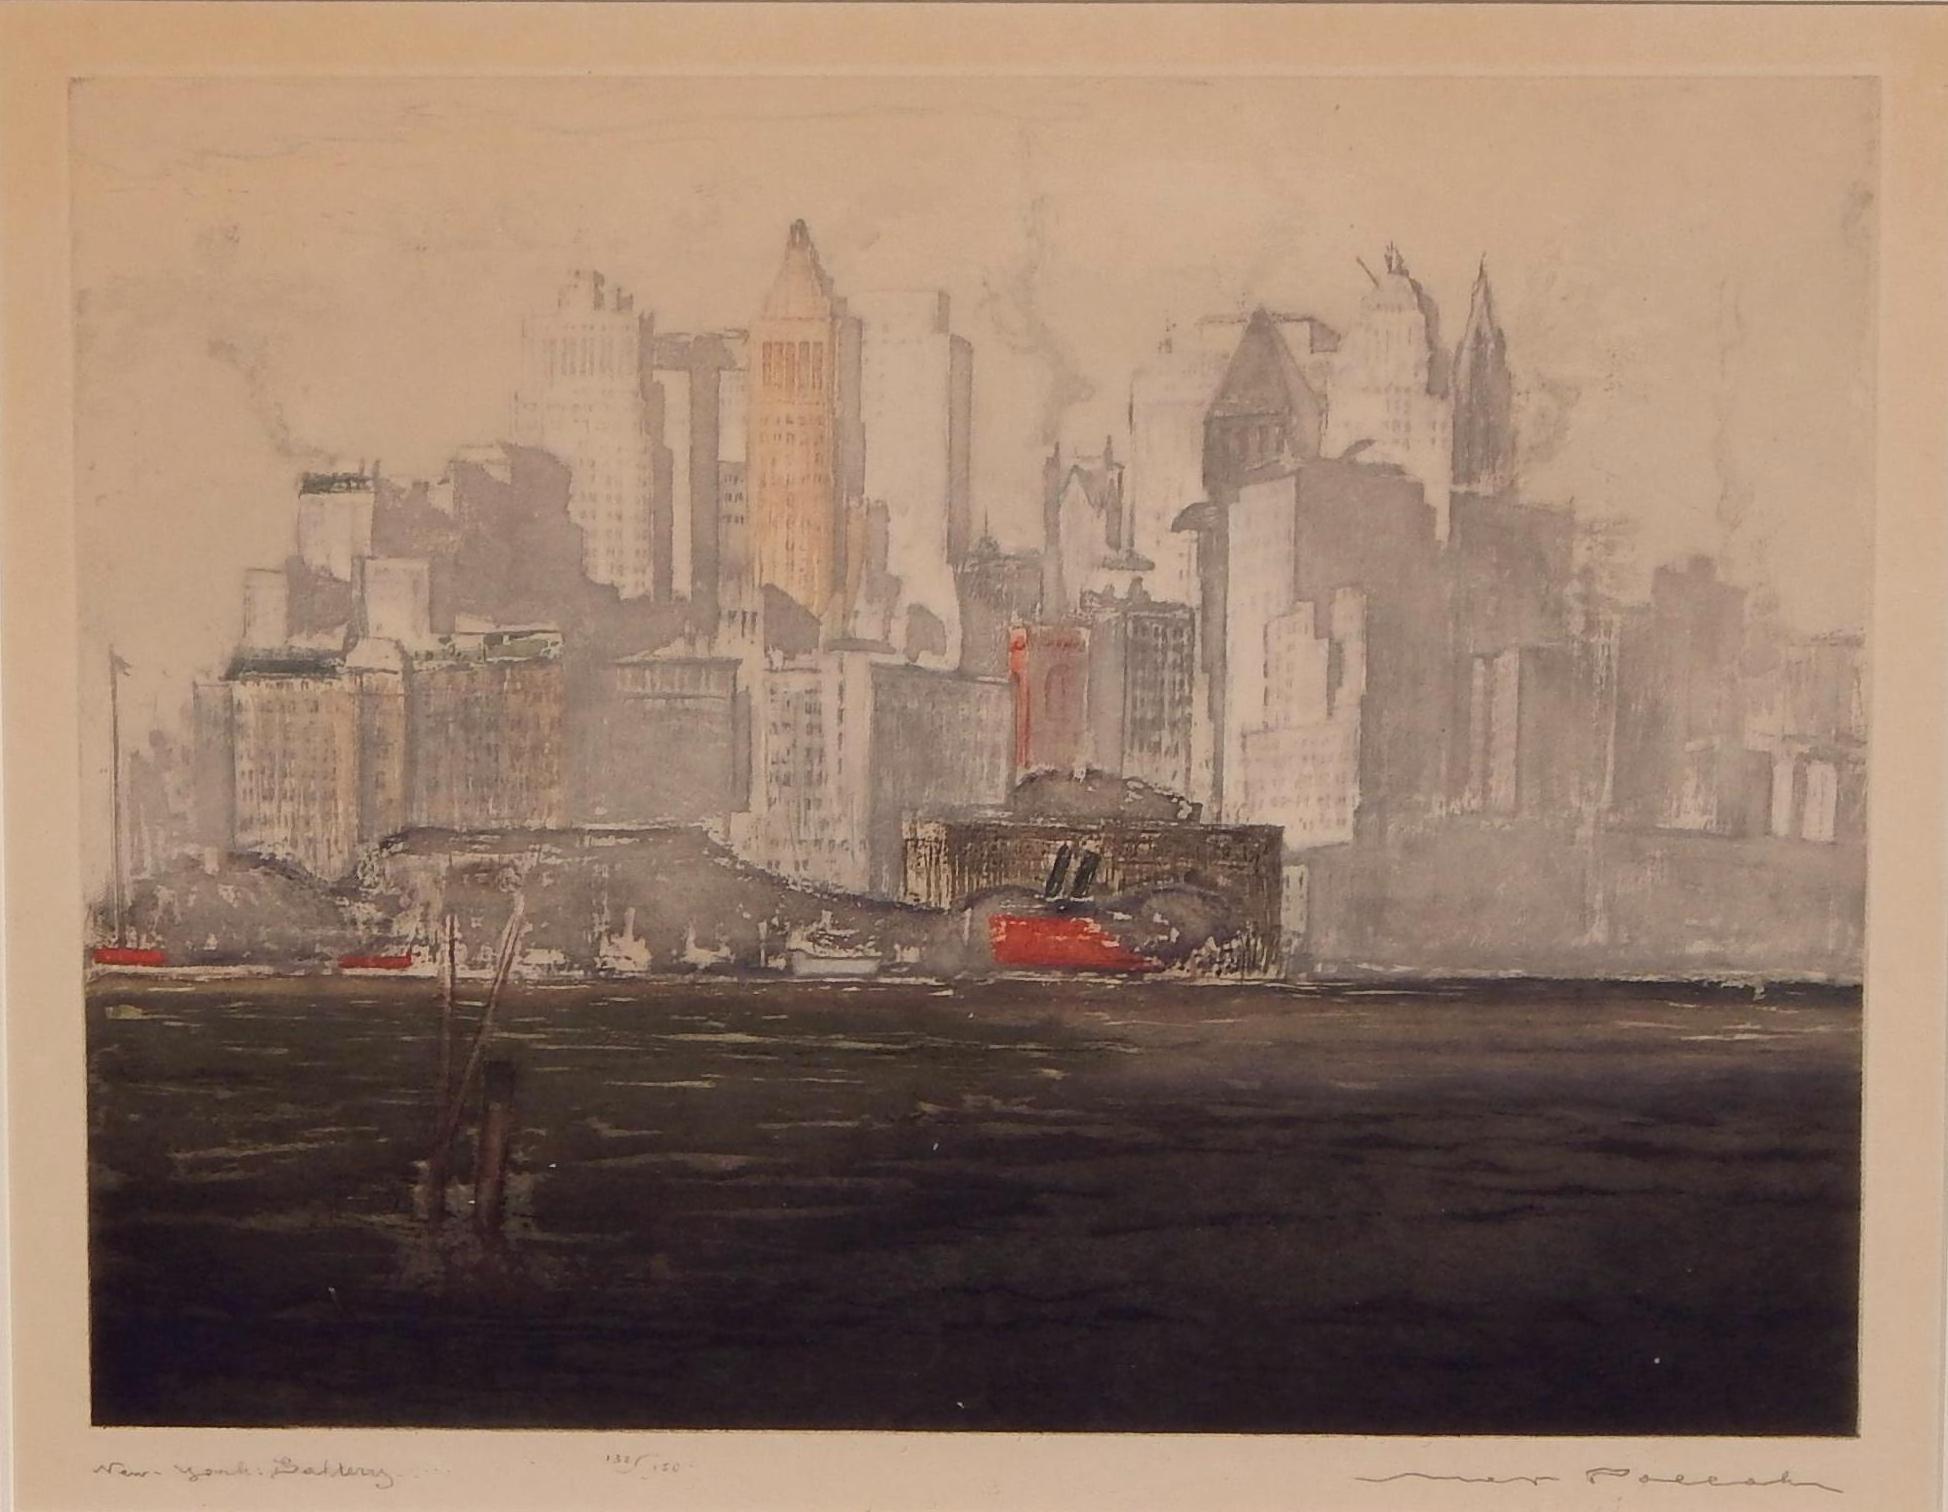 Grande gravure et aquatinte en couleur de New York par l'artiste tchèque/californien Max Pollak, (1886-1970)
Cette estampe est intitulée 